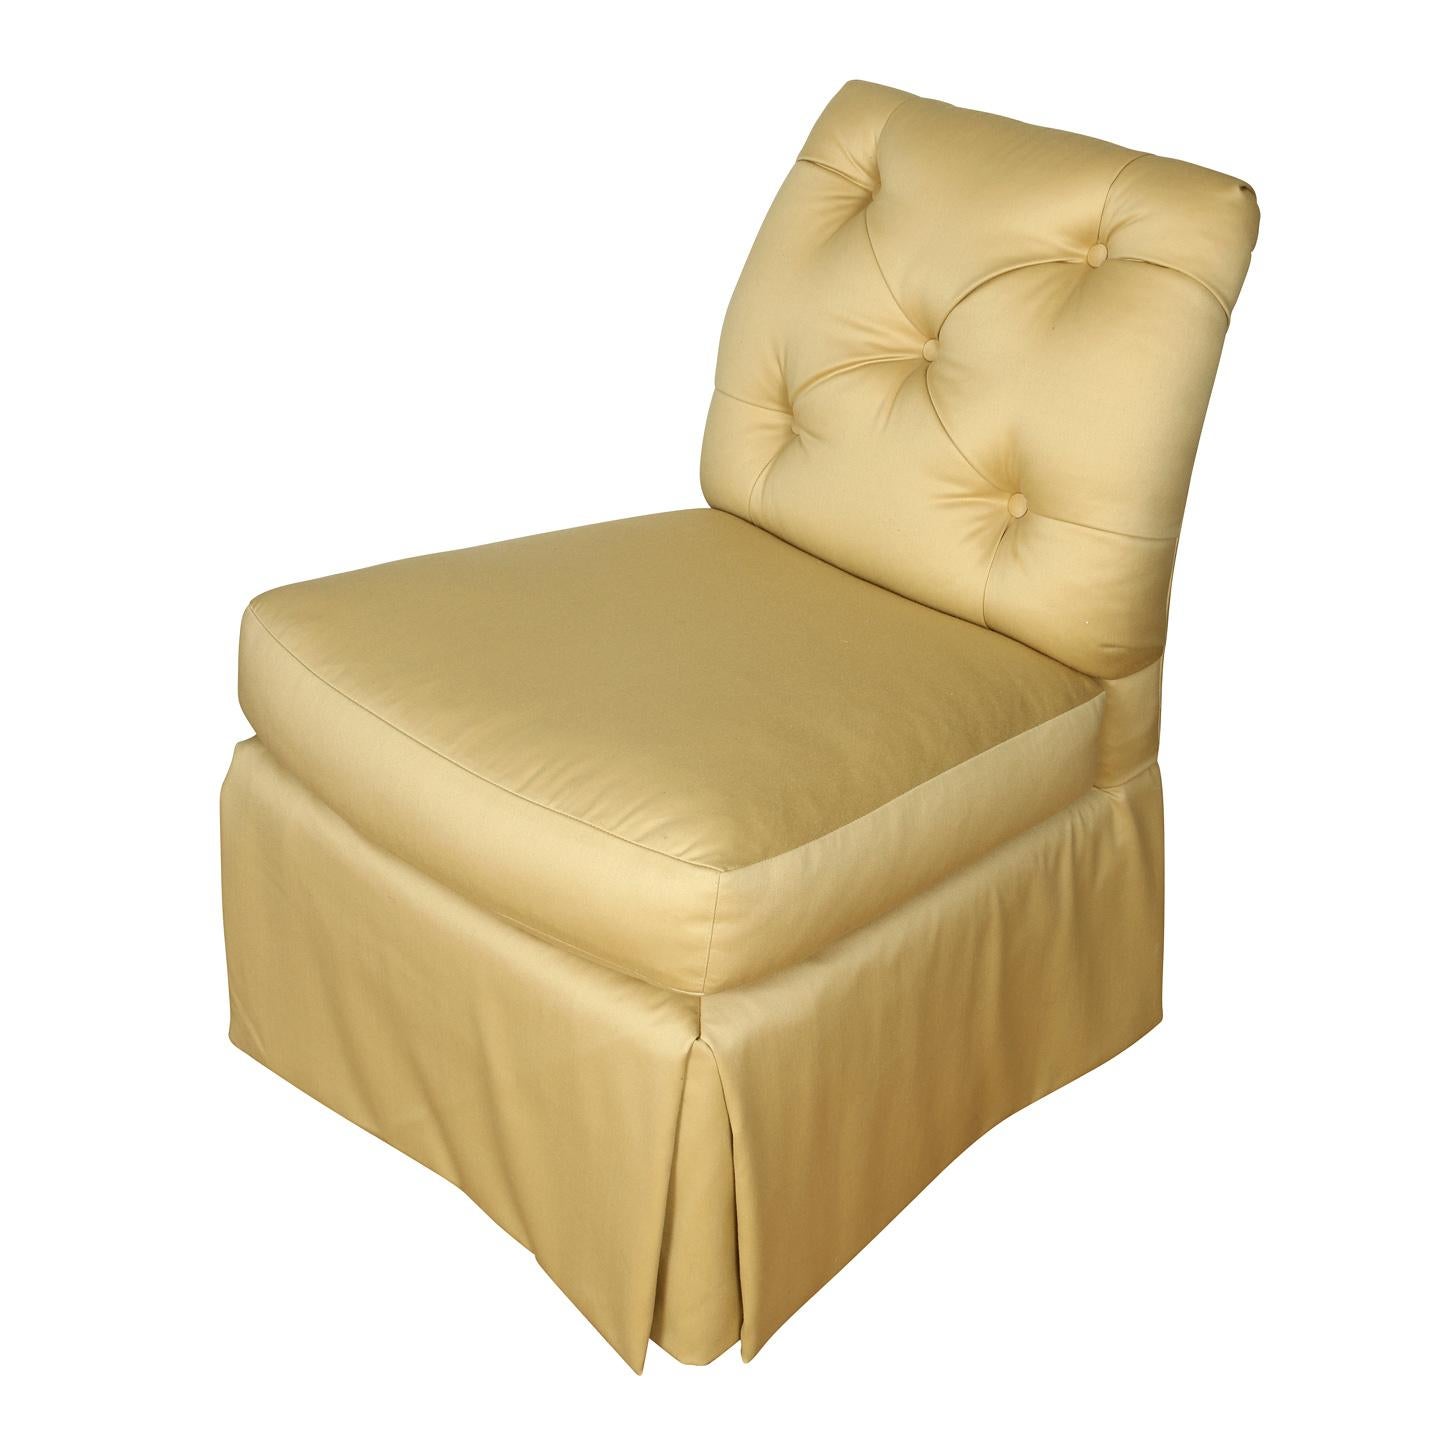 American Baker Cream Upholstered Slipper Chair